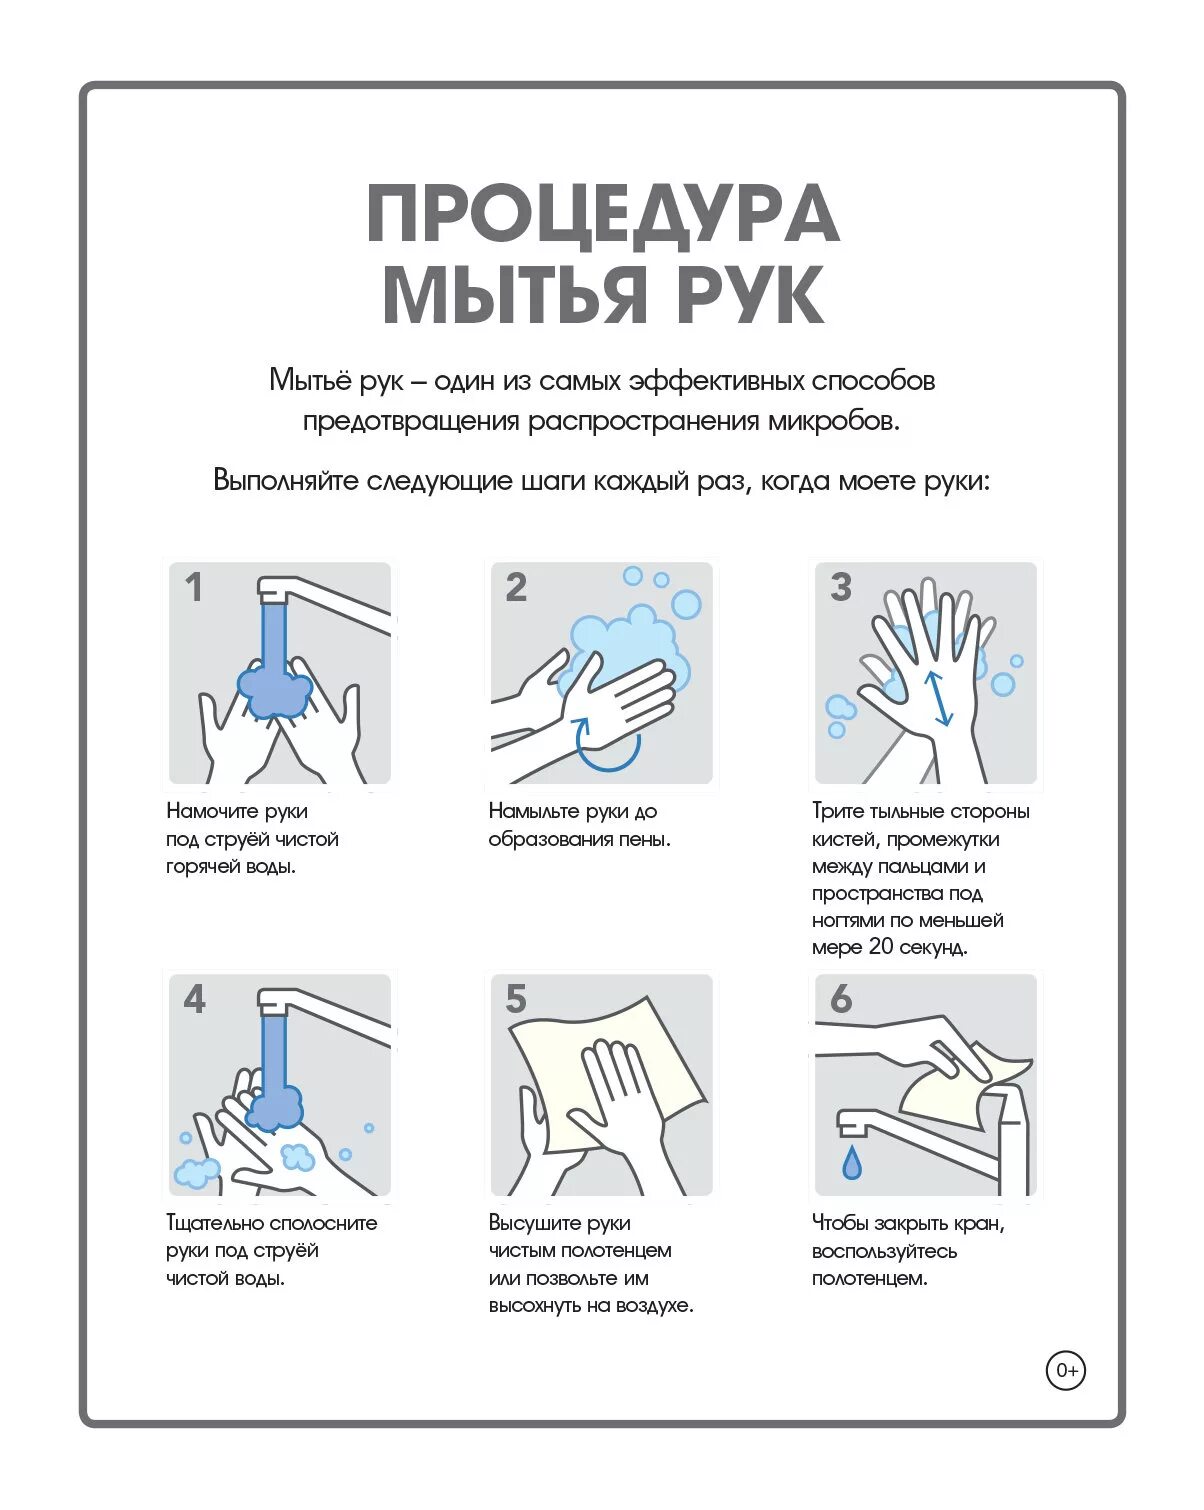 Инструкция по мытью окон. Как правильно мыть руки. Правильное мытье рук. Правила мытья рук. Техника правильного мытья рук.